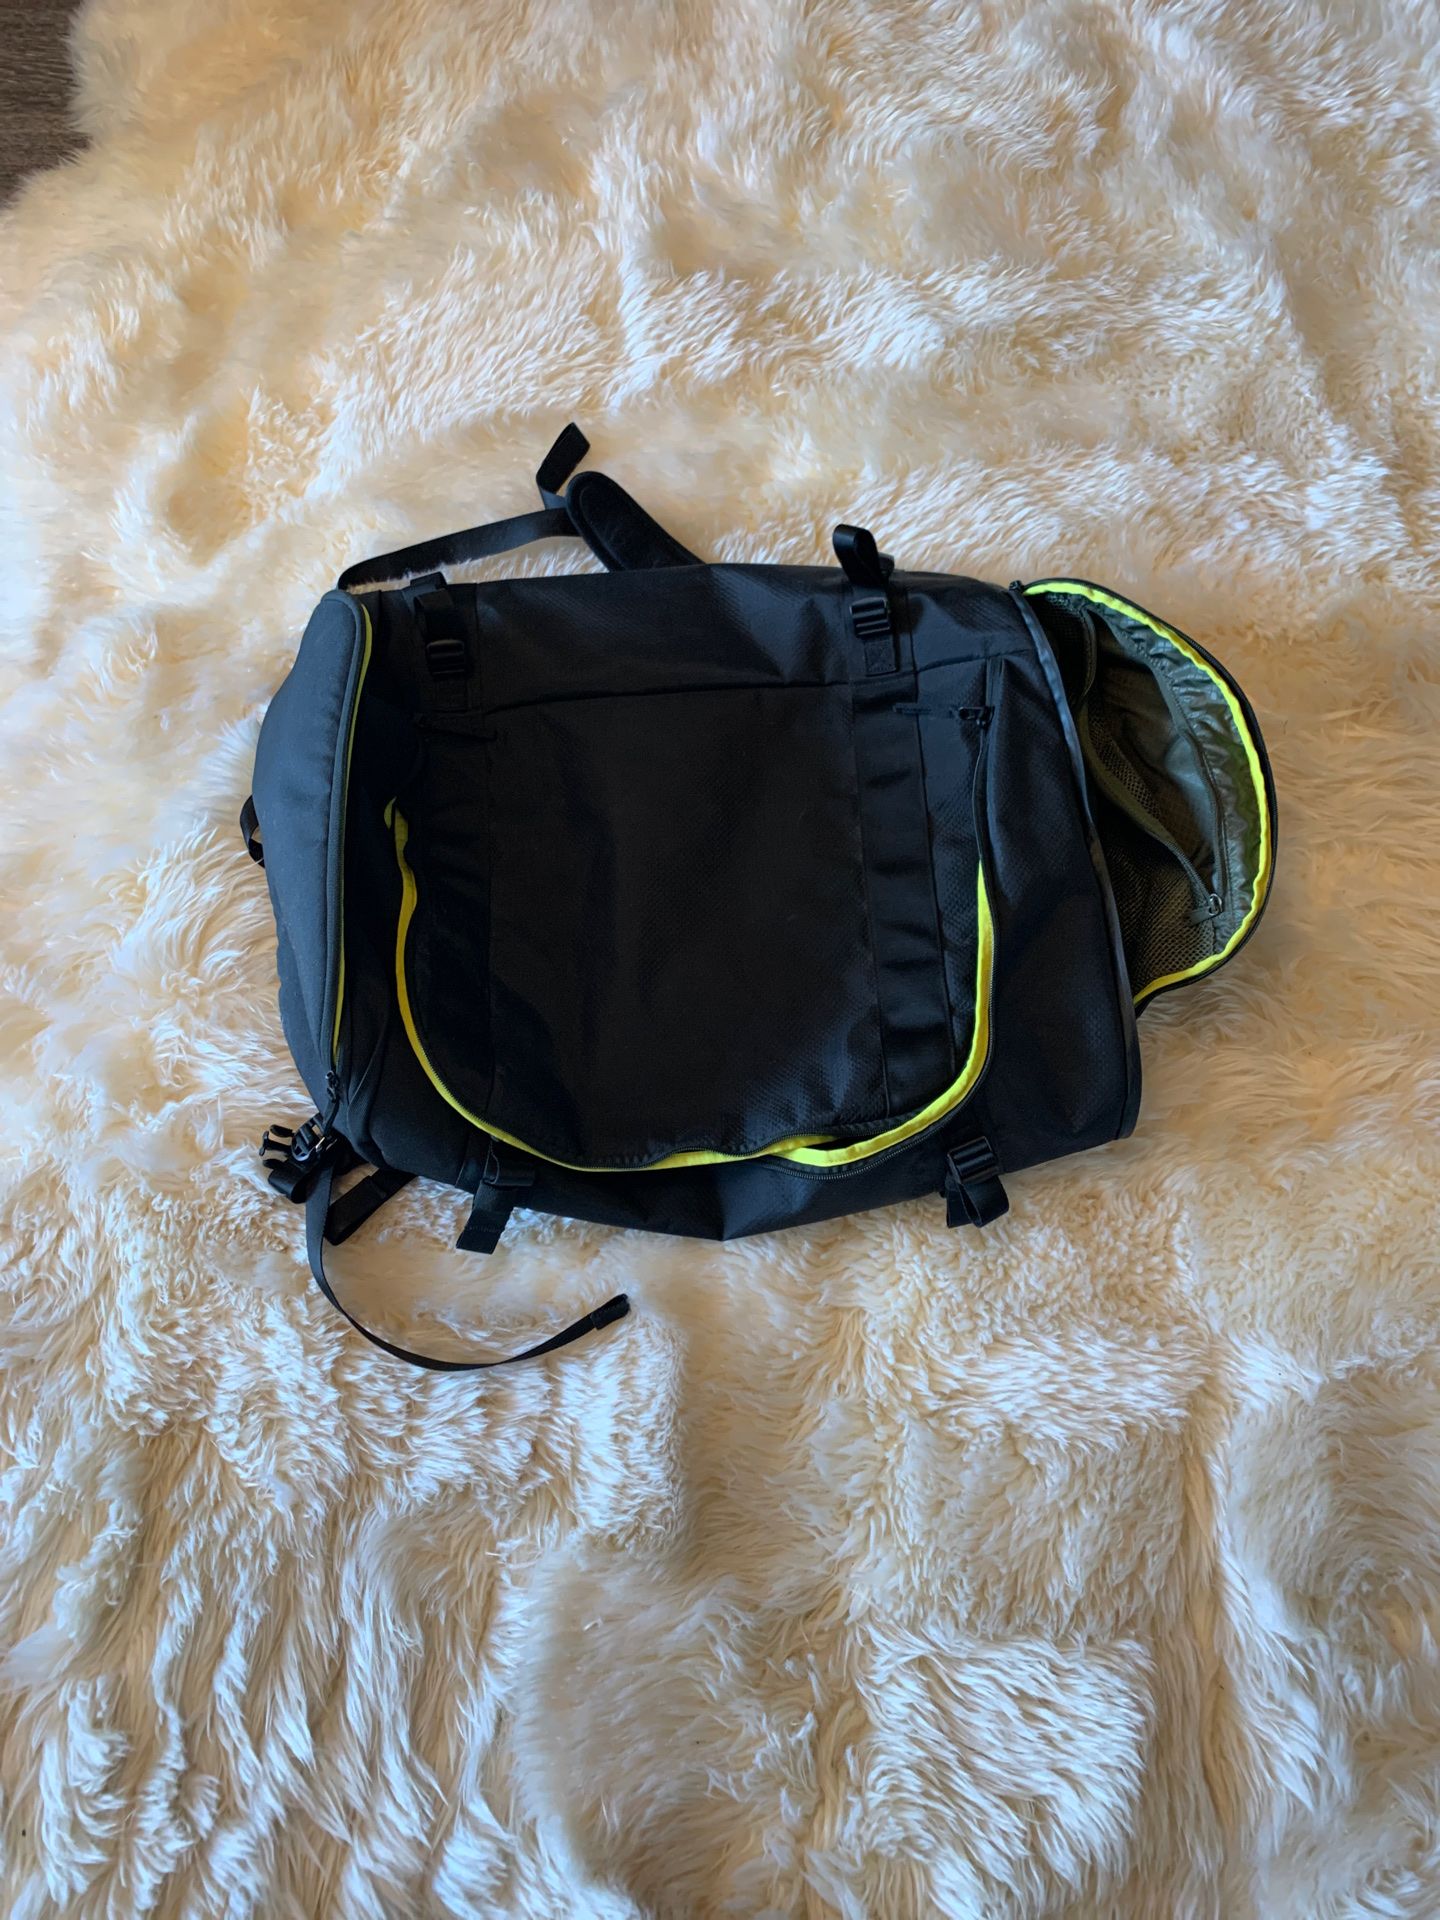 Lululemon Gymbag / Backpack